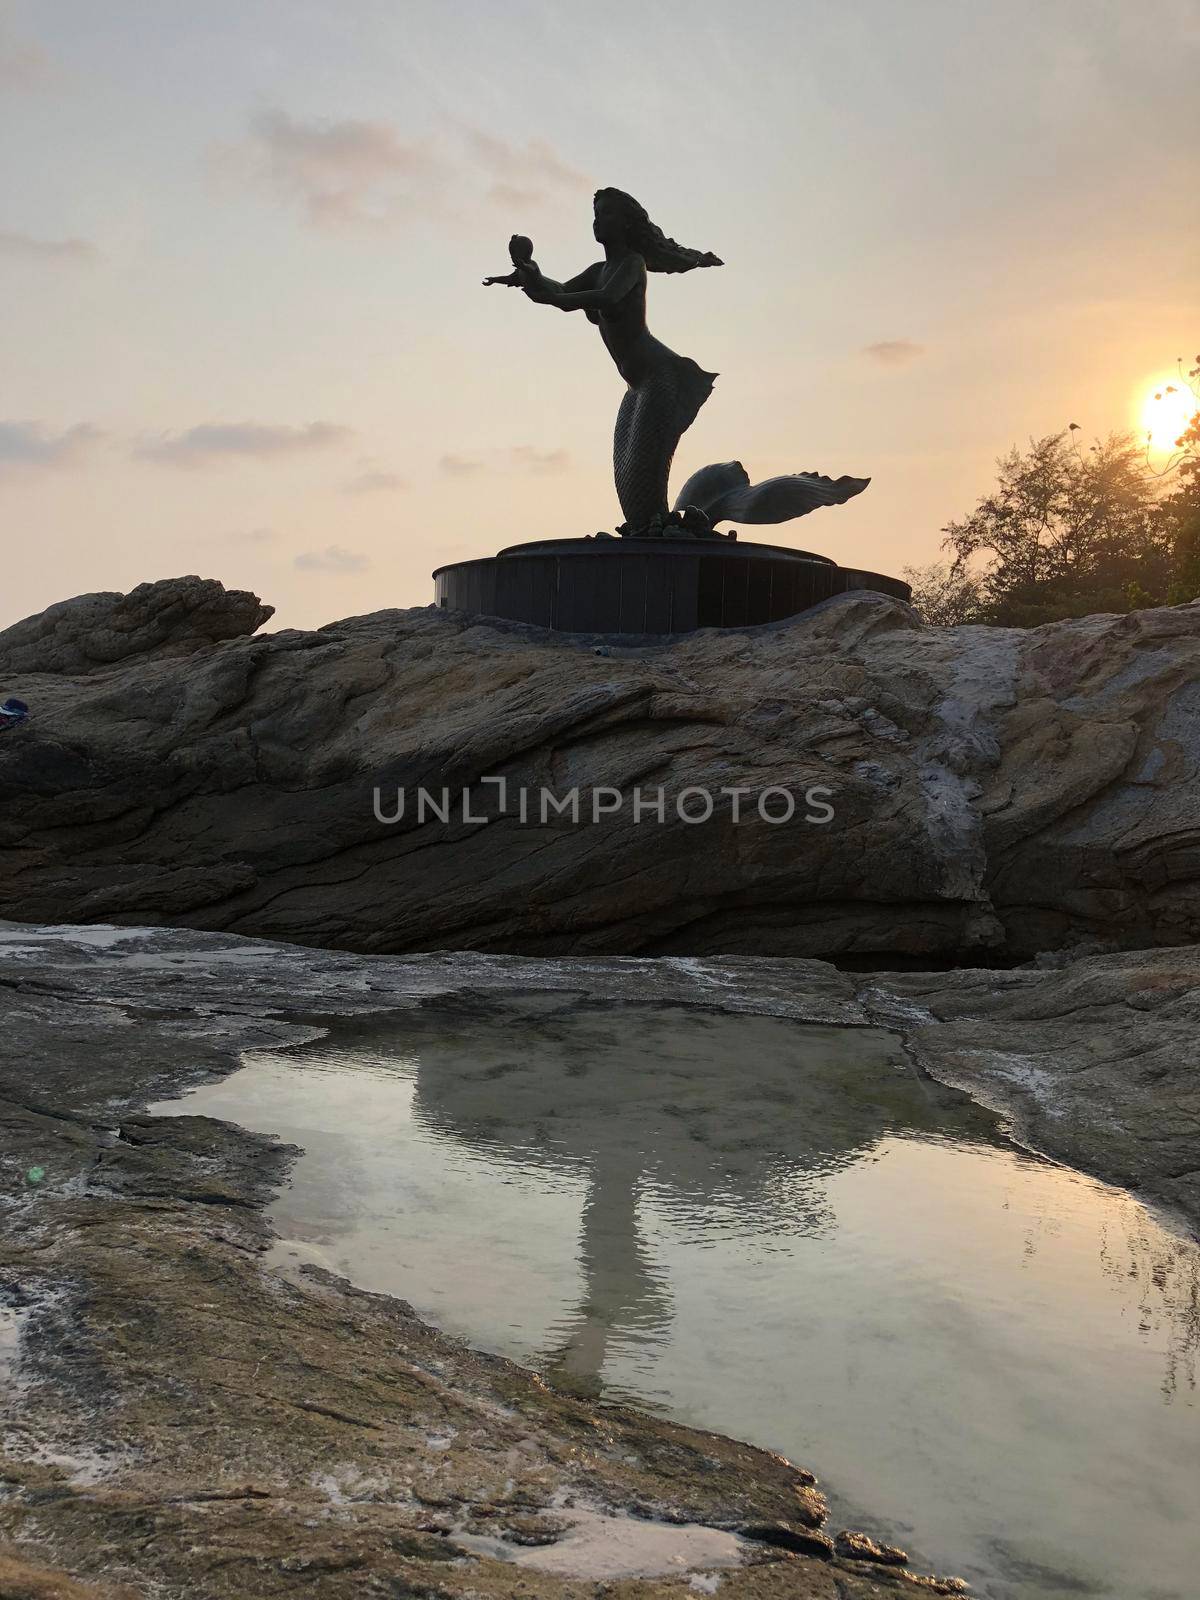 Mermaid statue on Koh Samet island in Thailand